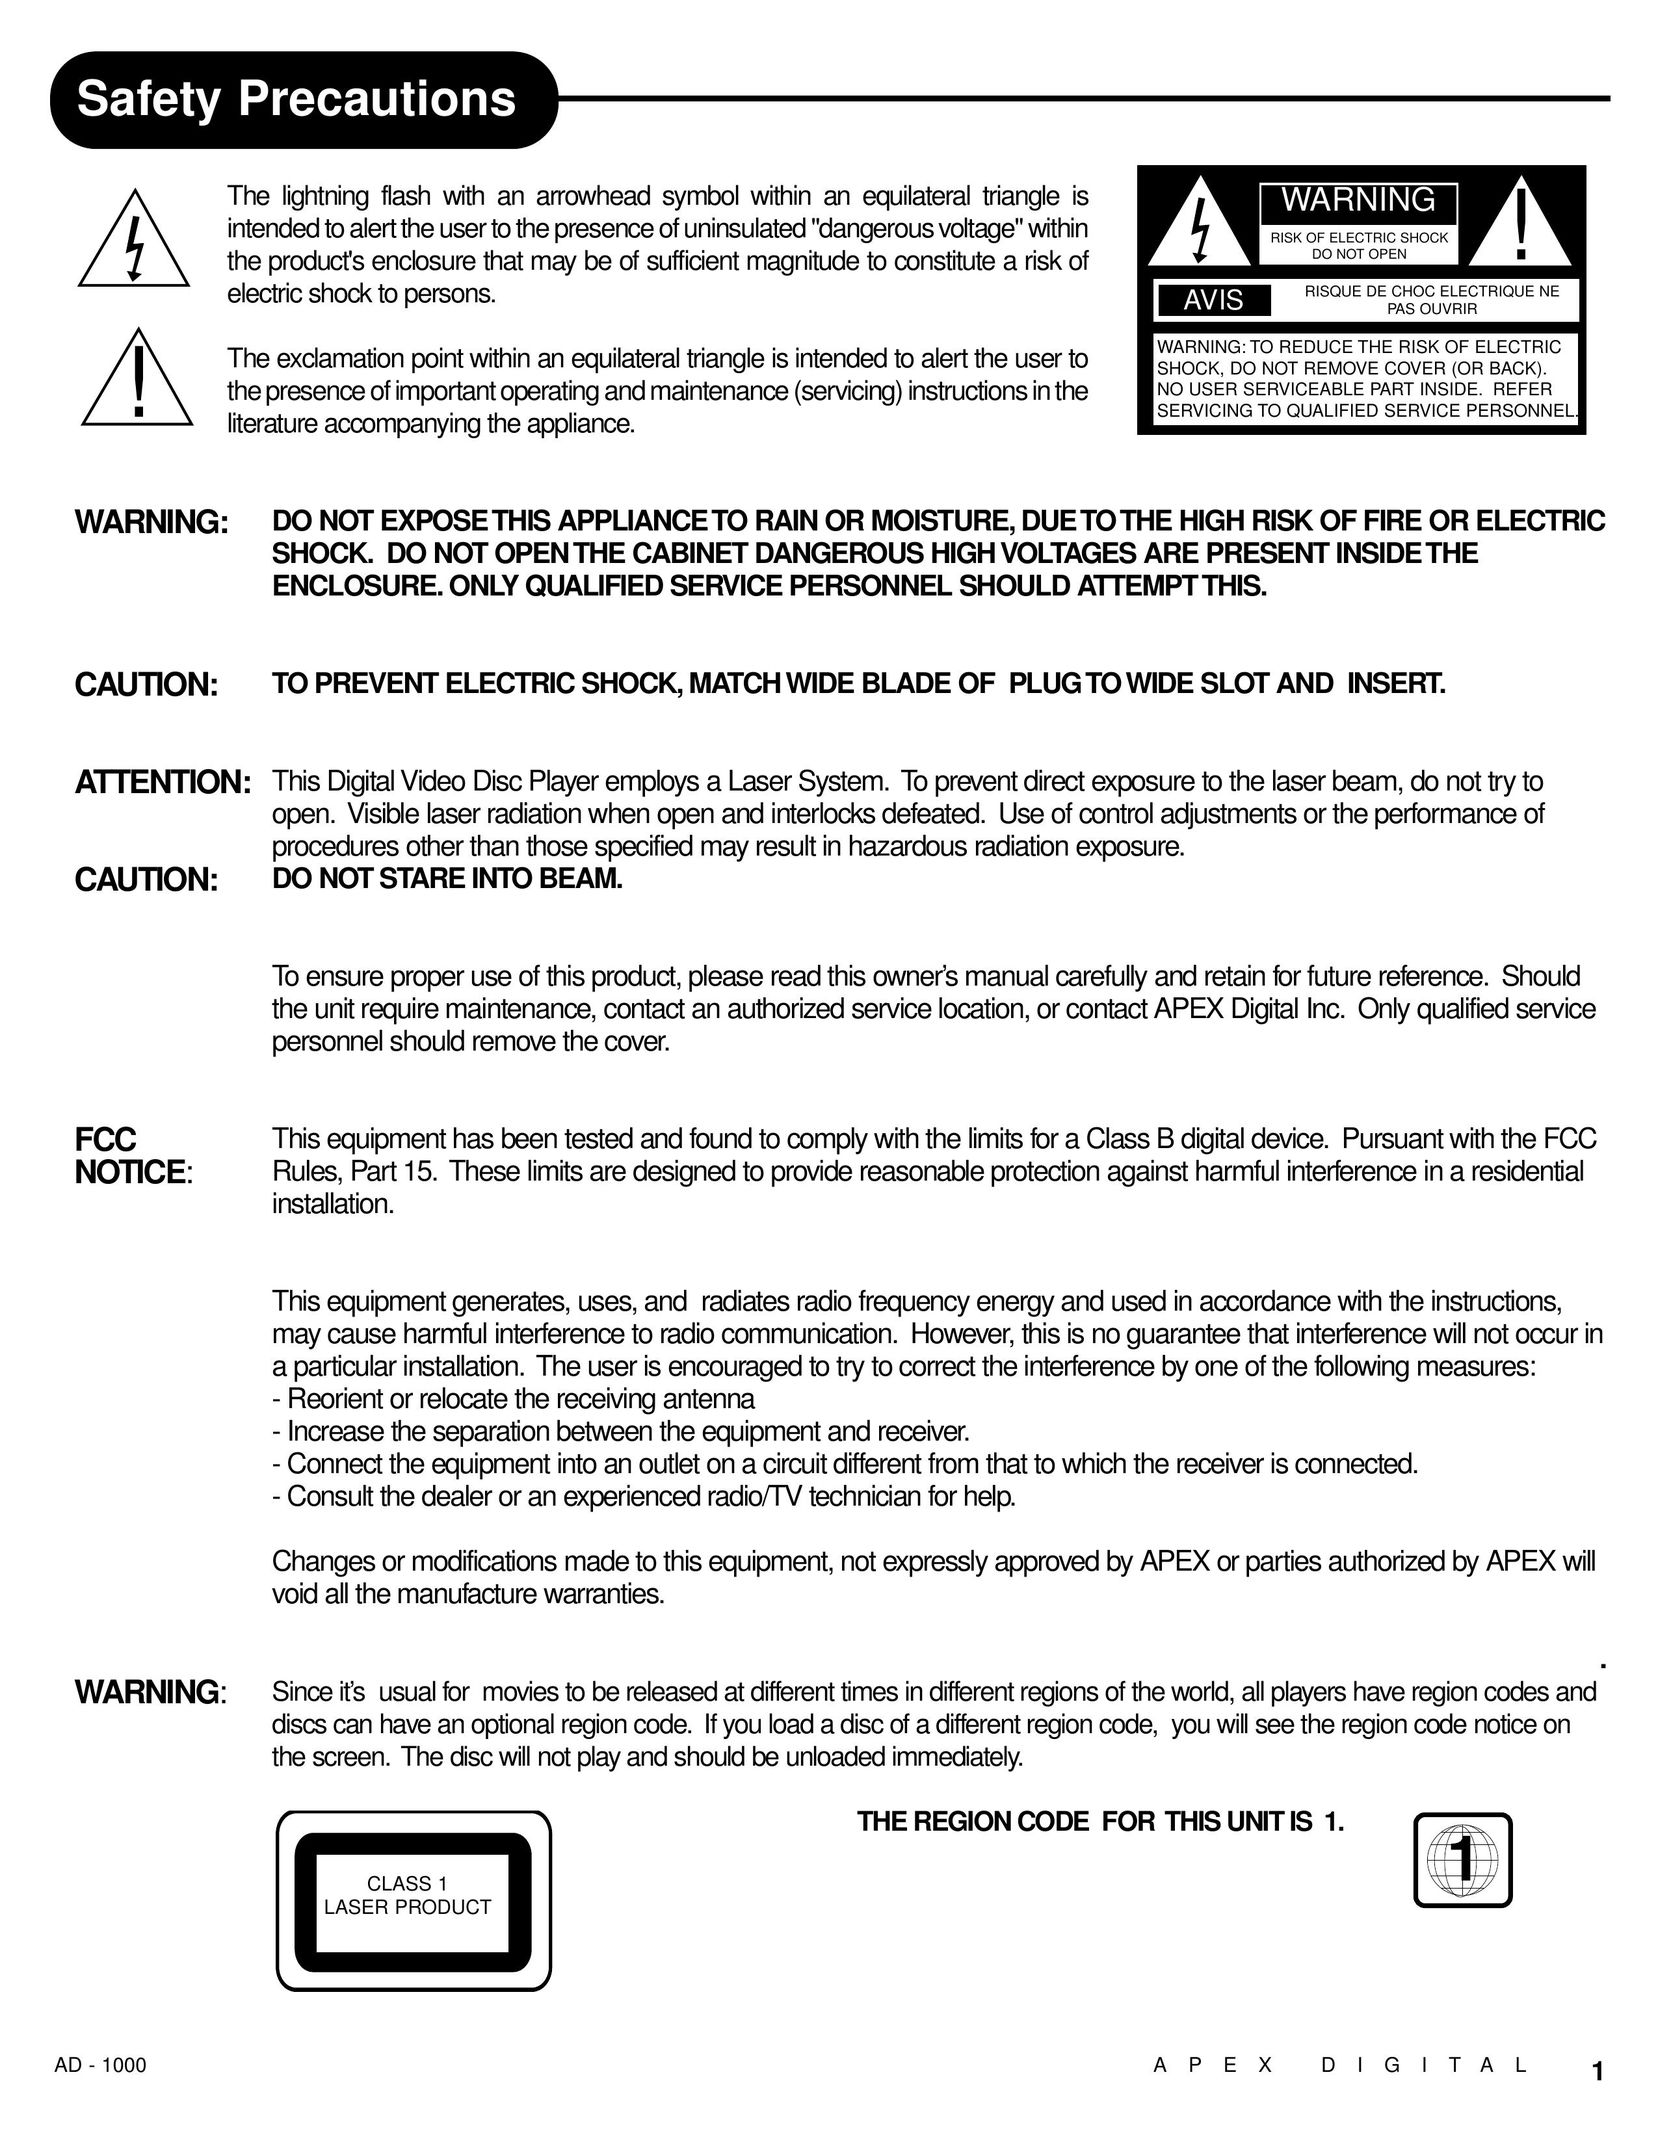 Apex Digital AD - 1000 DVD Player User Manual